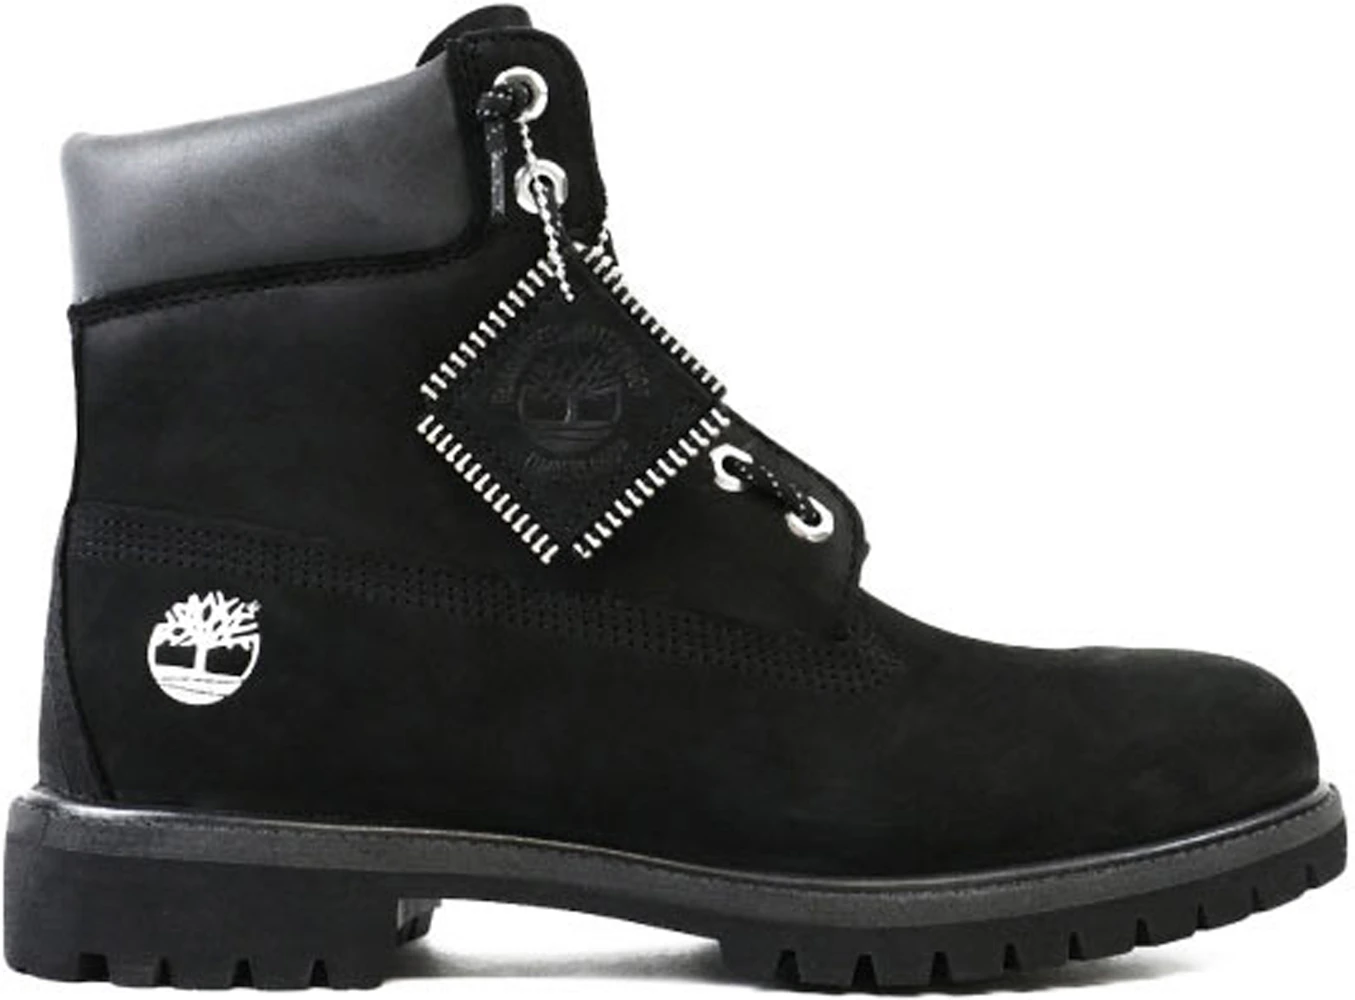 Timberland Boot DTLR Zip Black Men's TB0A1Q8E001 -